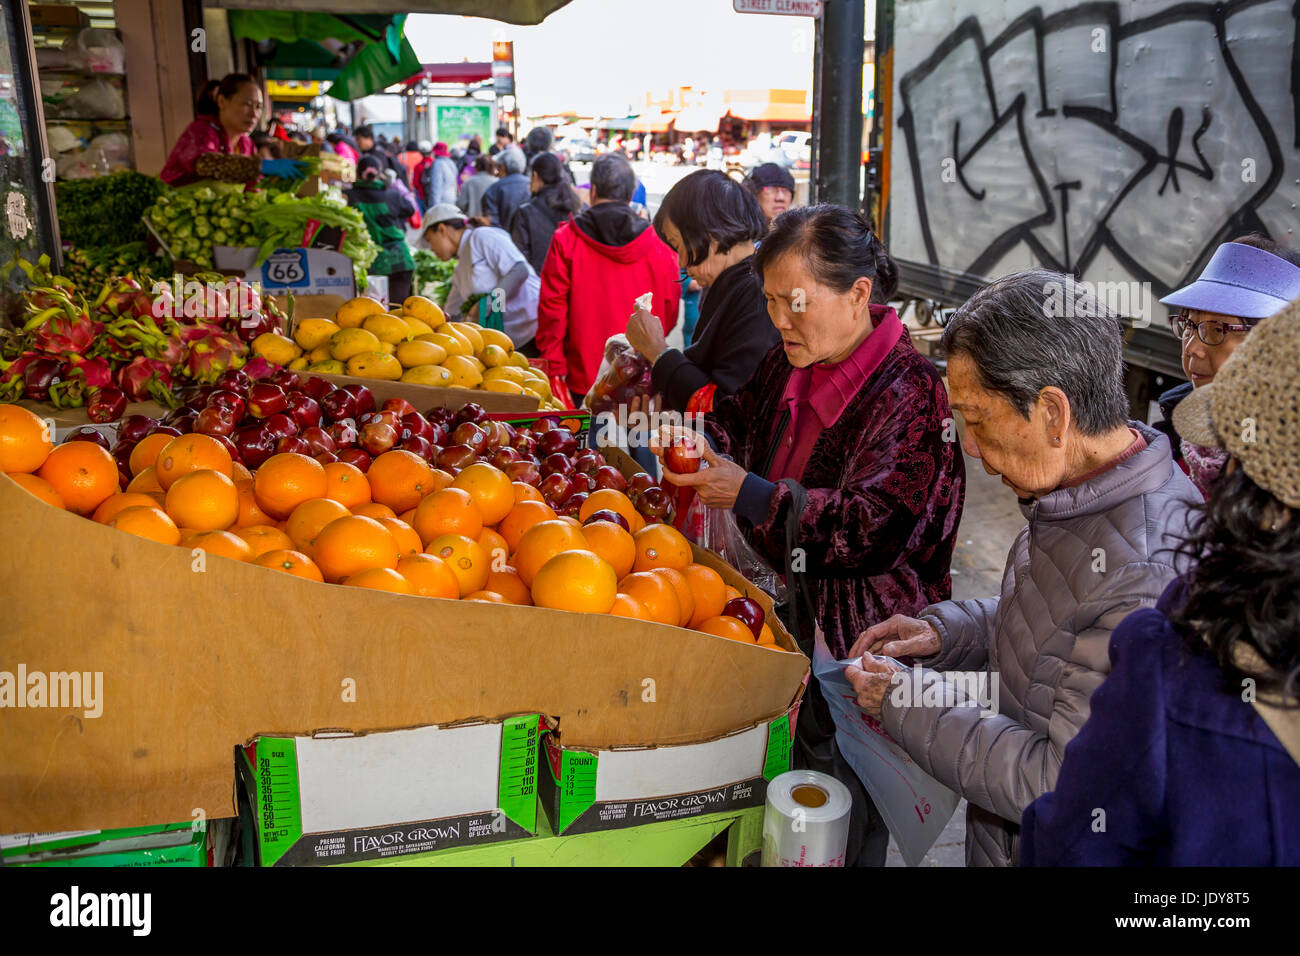 Cinese-americani, cinese-popolo americano, shoppers, shopping, mercato di frutta e verdura, Stockton Street, Chinatown di San Francisco, California Foto Stock